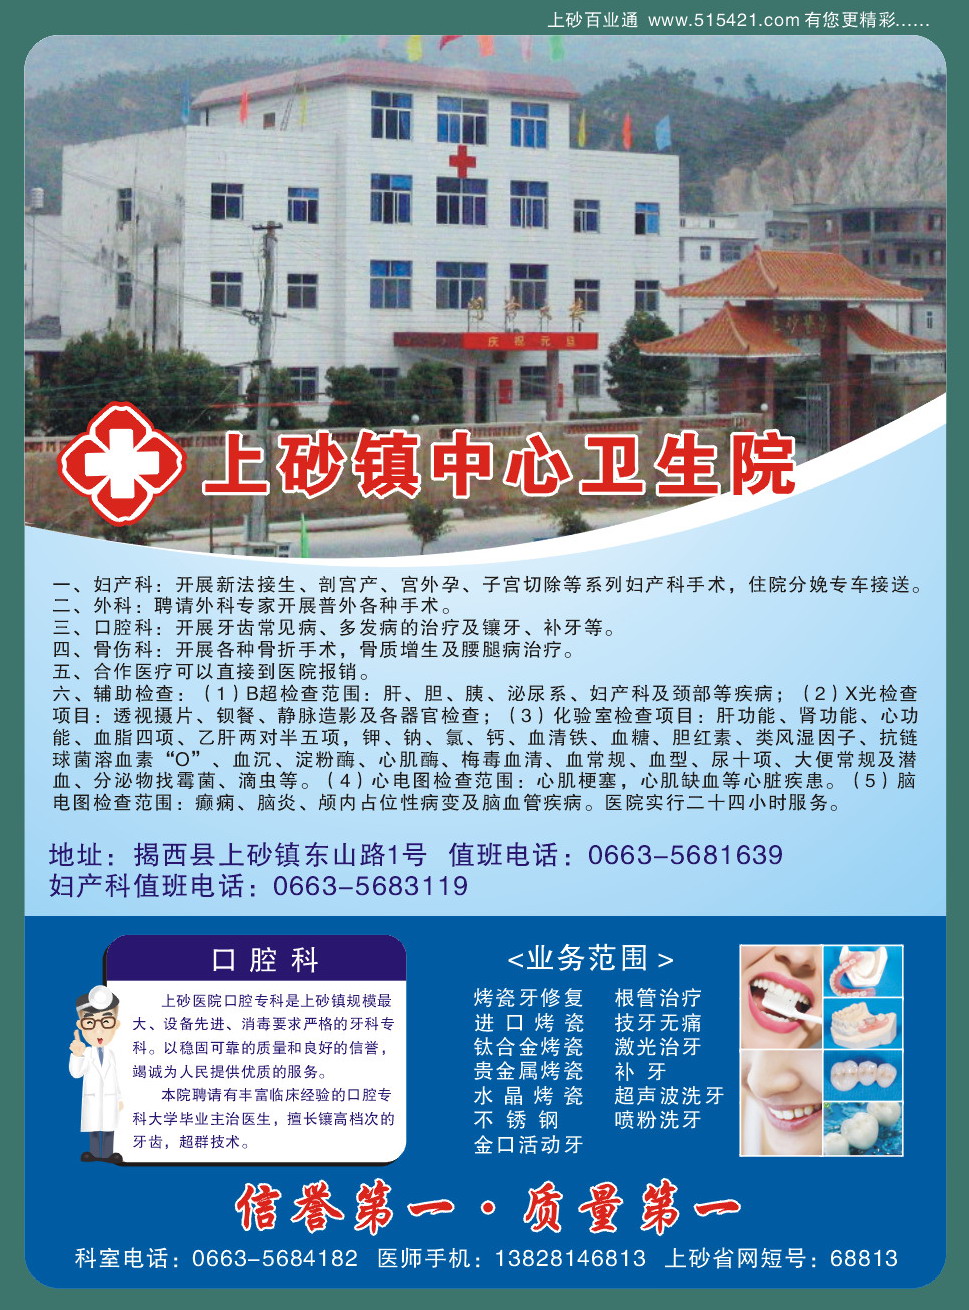 上砂医院1.jpg